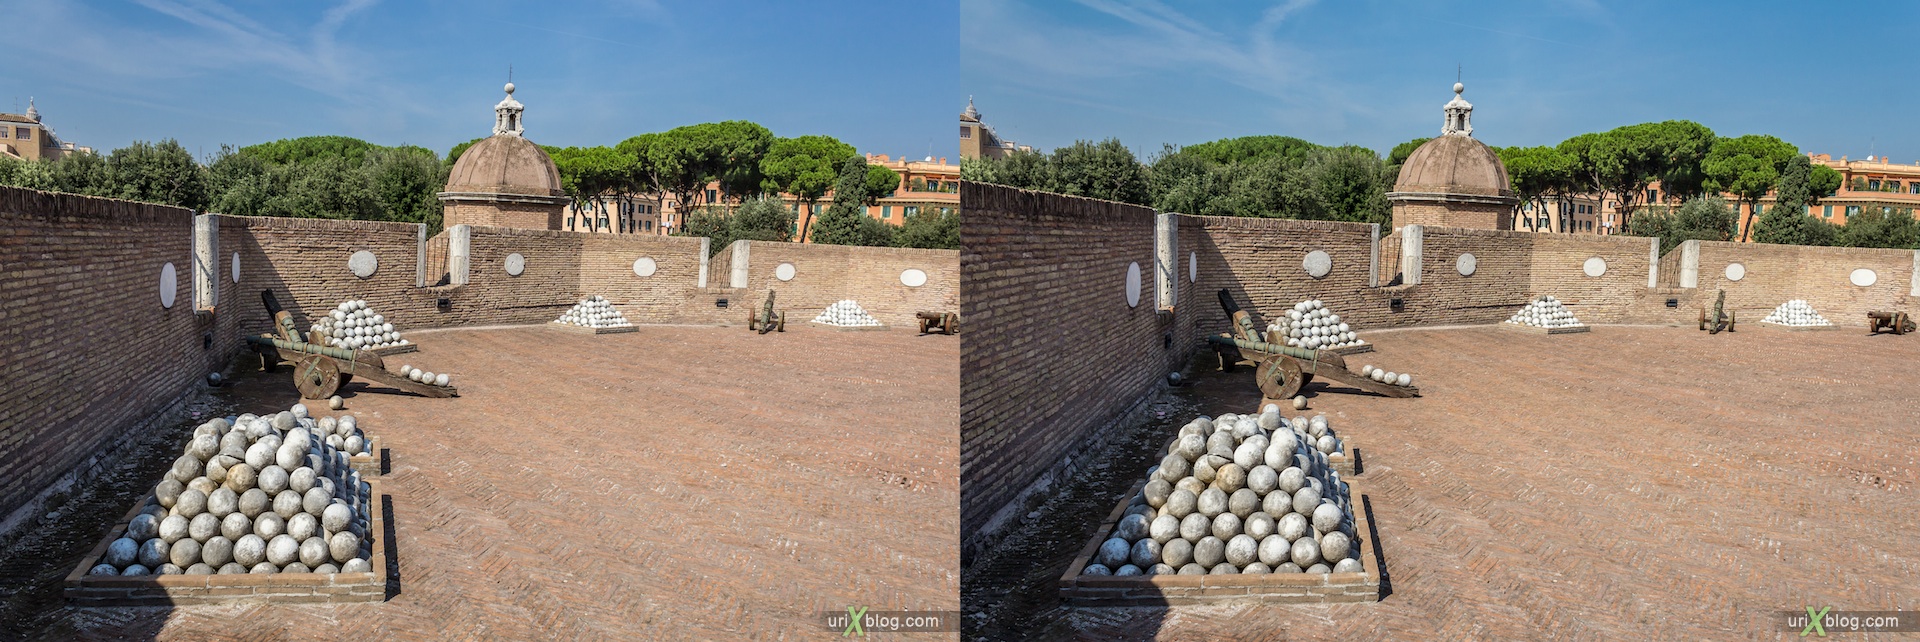 2012, замок Святого Ангела, мавзолей Адриана, Рим, Италия, осень, 3D, перекрёстные стереопары, стерео, стереопара, стереопары